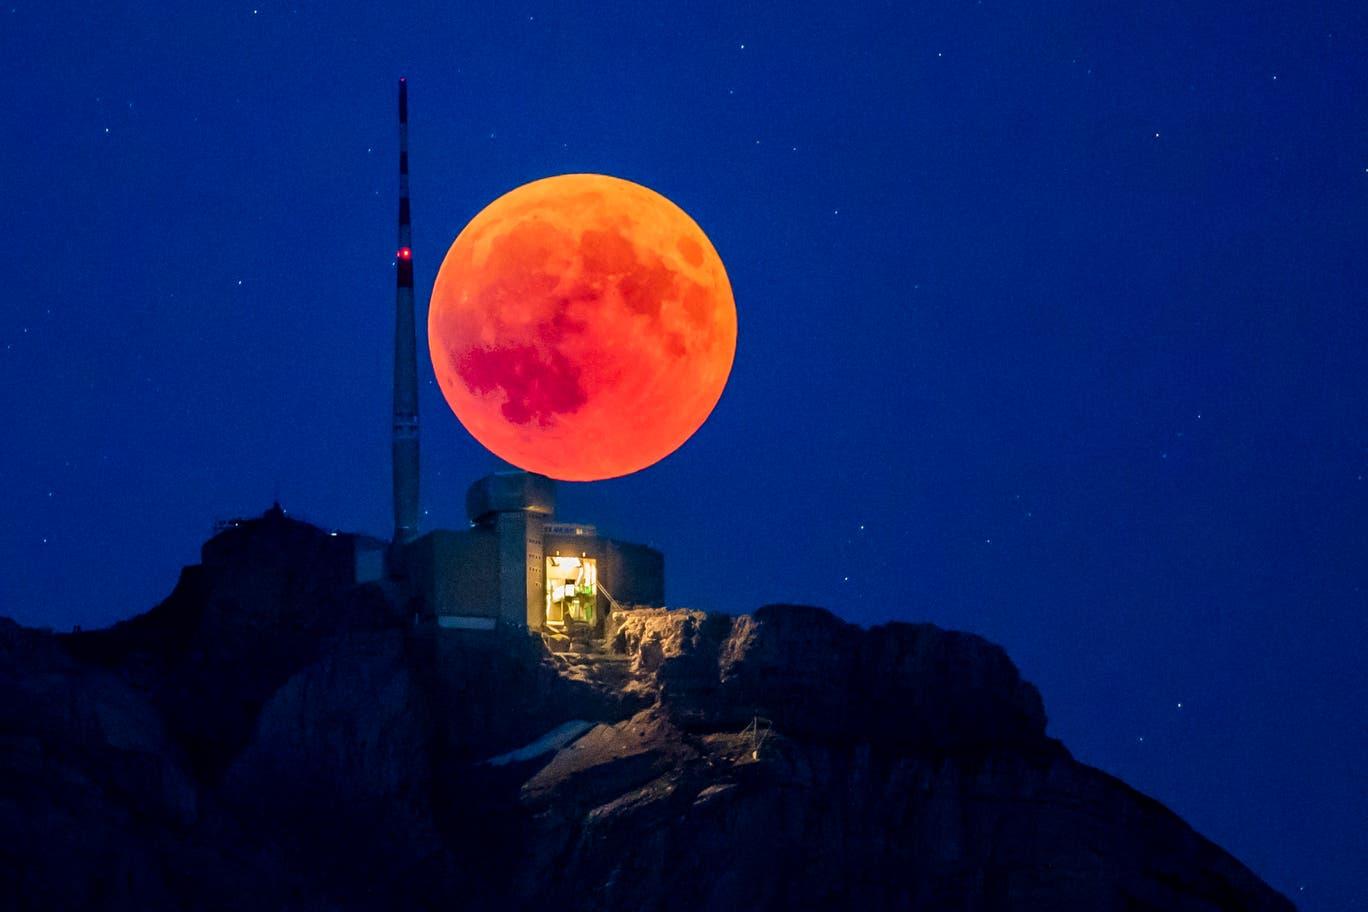 Siêu trăng máu tỏa sáng huyền ảo nhiều người đam mê săn được khoảnh  khắc lung linh